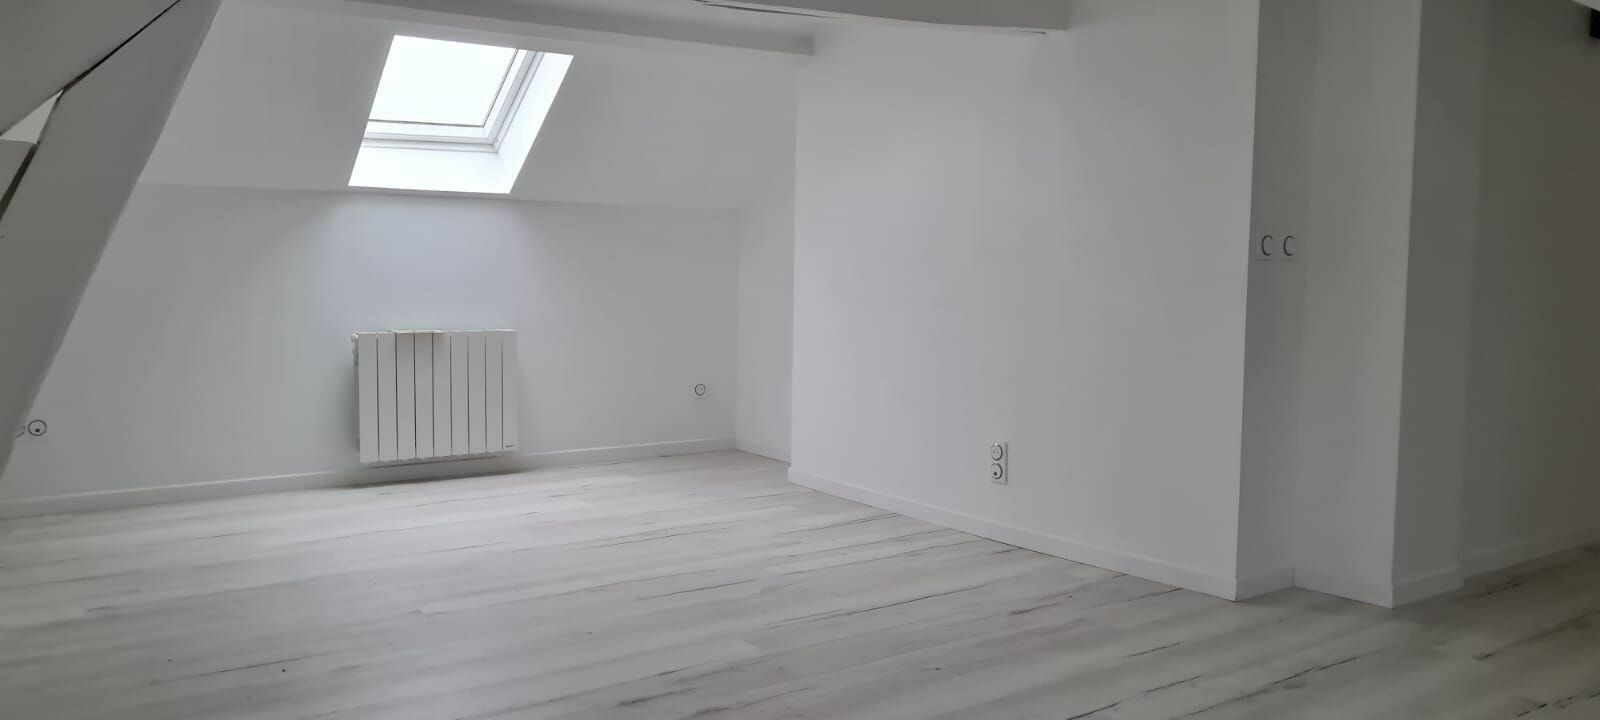 Appartement à vendre 3 44.73m2 à La Ferté-sous-Jouarre vignette-4